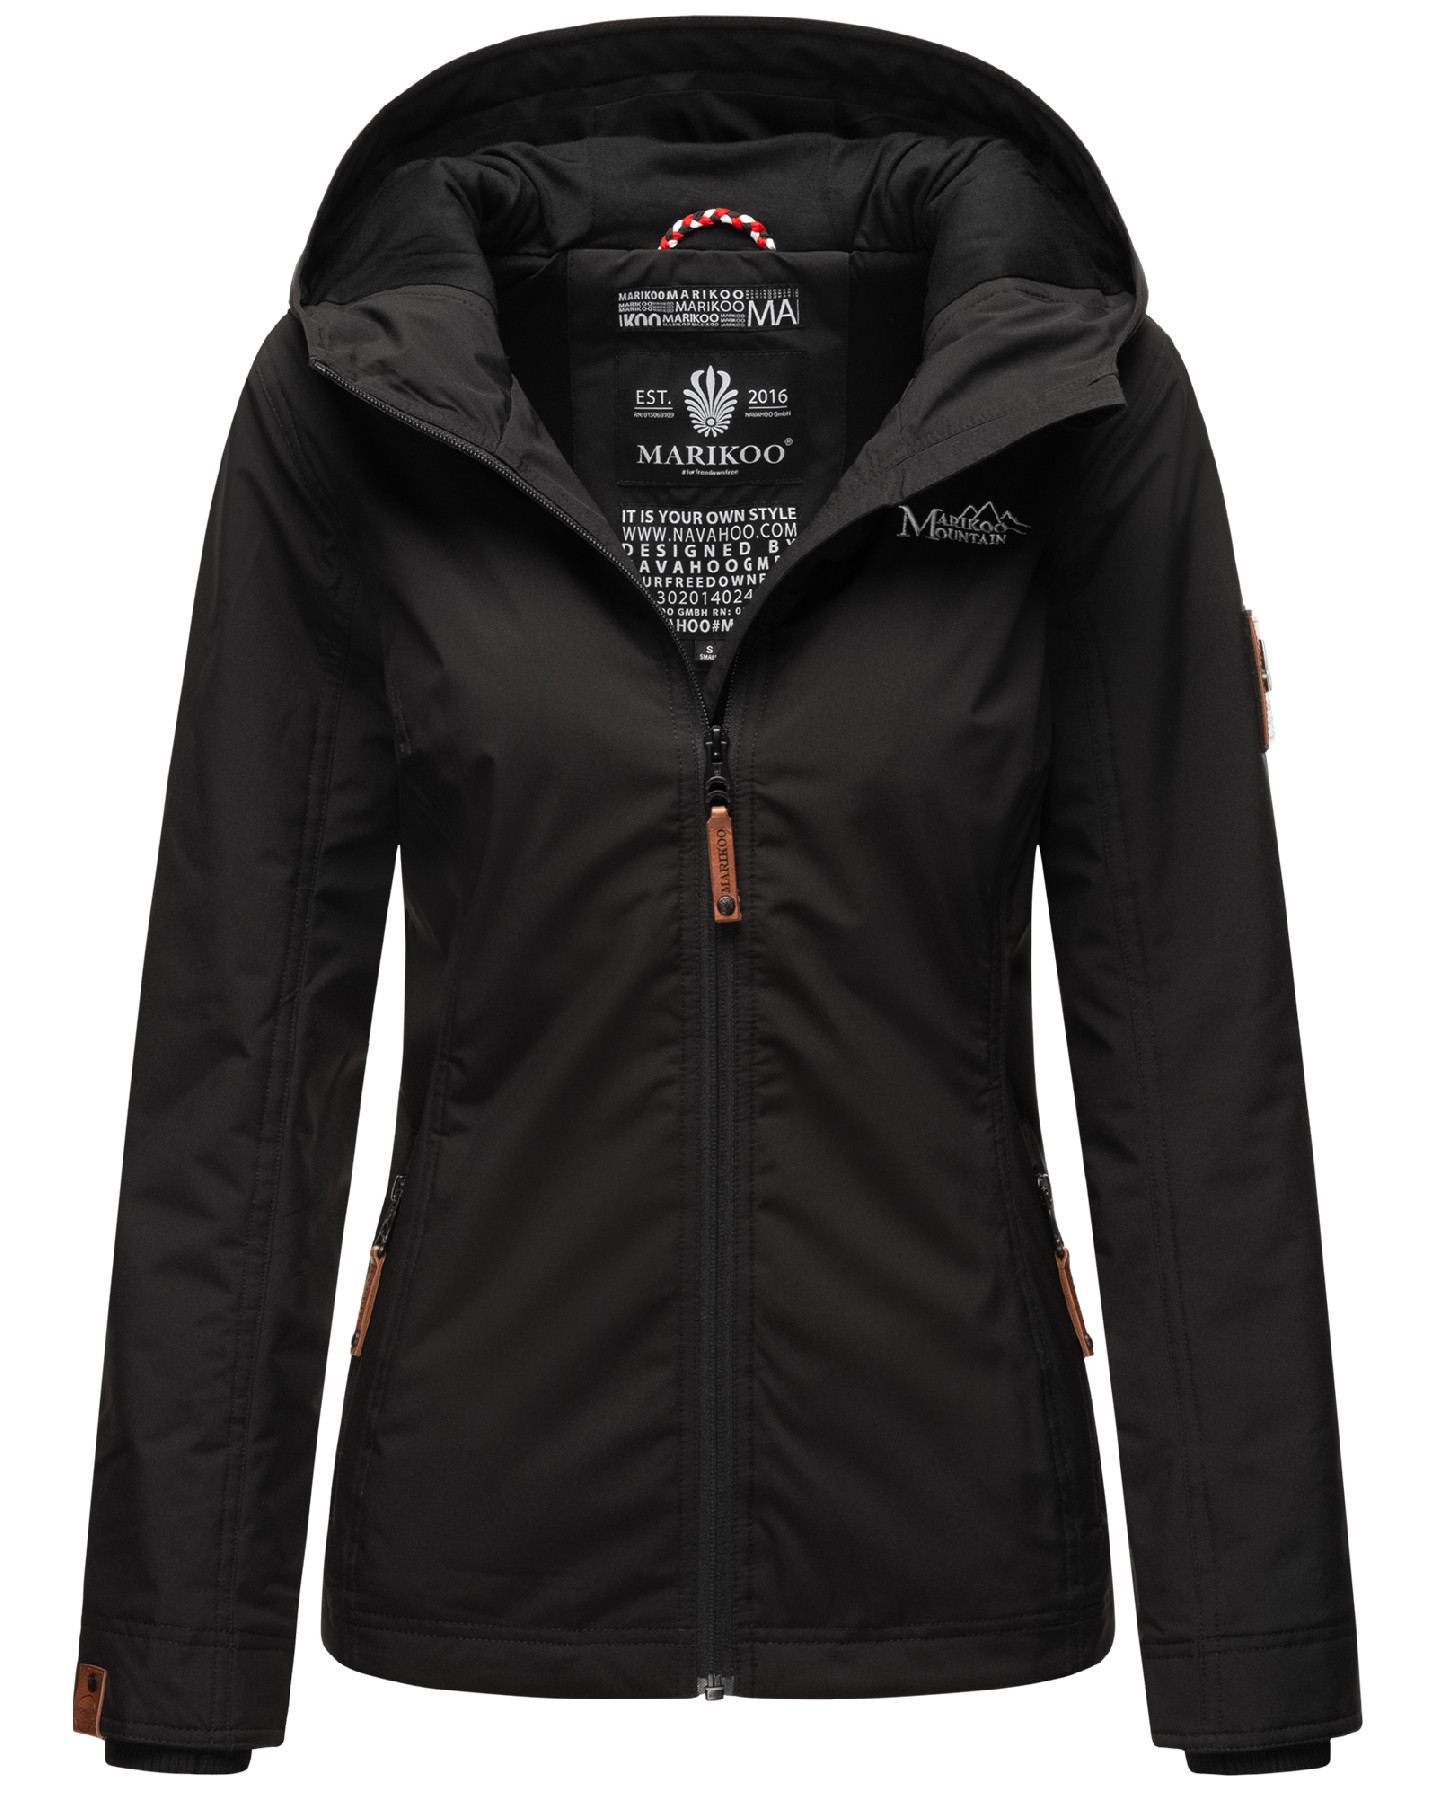 Dámská outdoorová bunda s kapucí Brombeere Marikoo - BLACK Velikost: XS